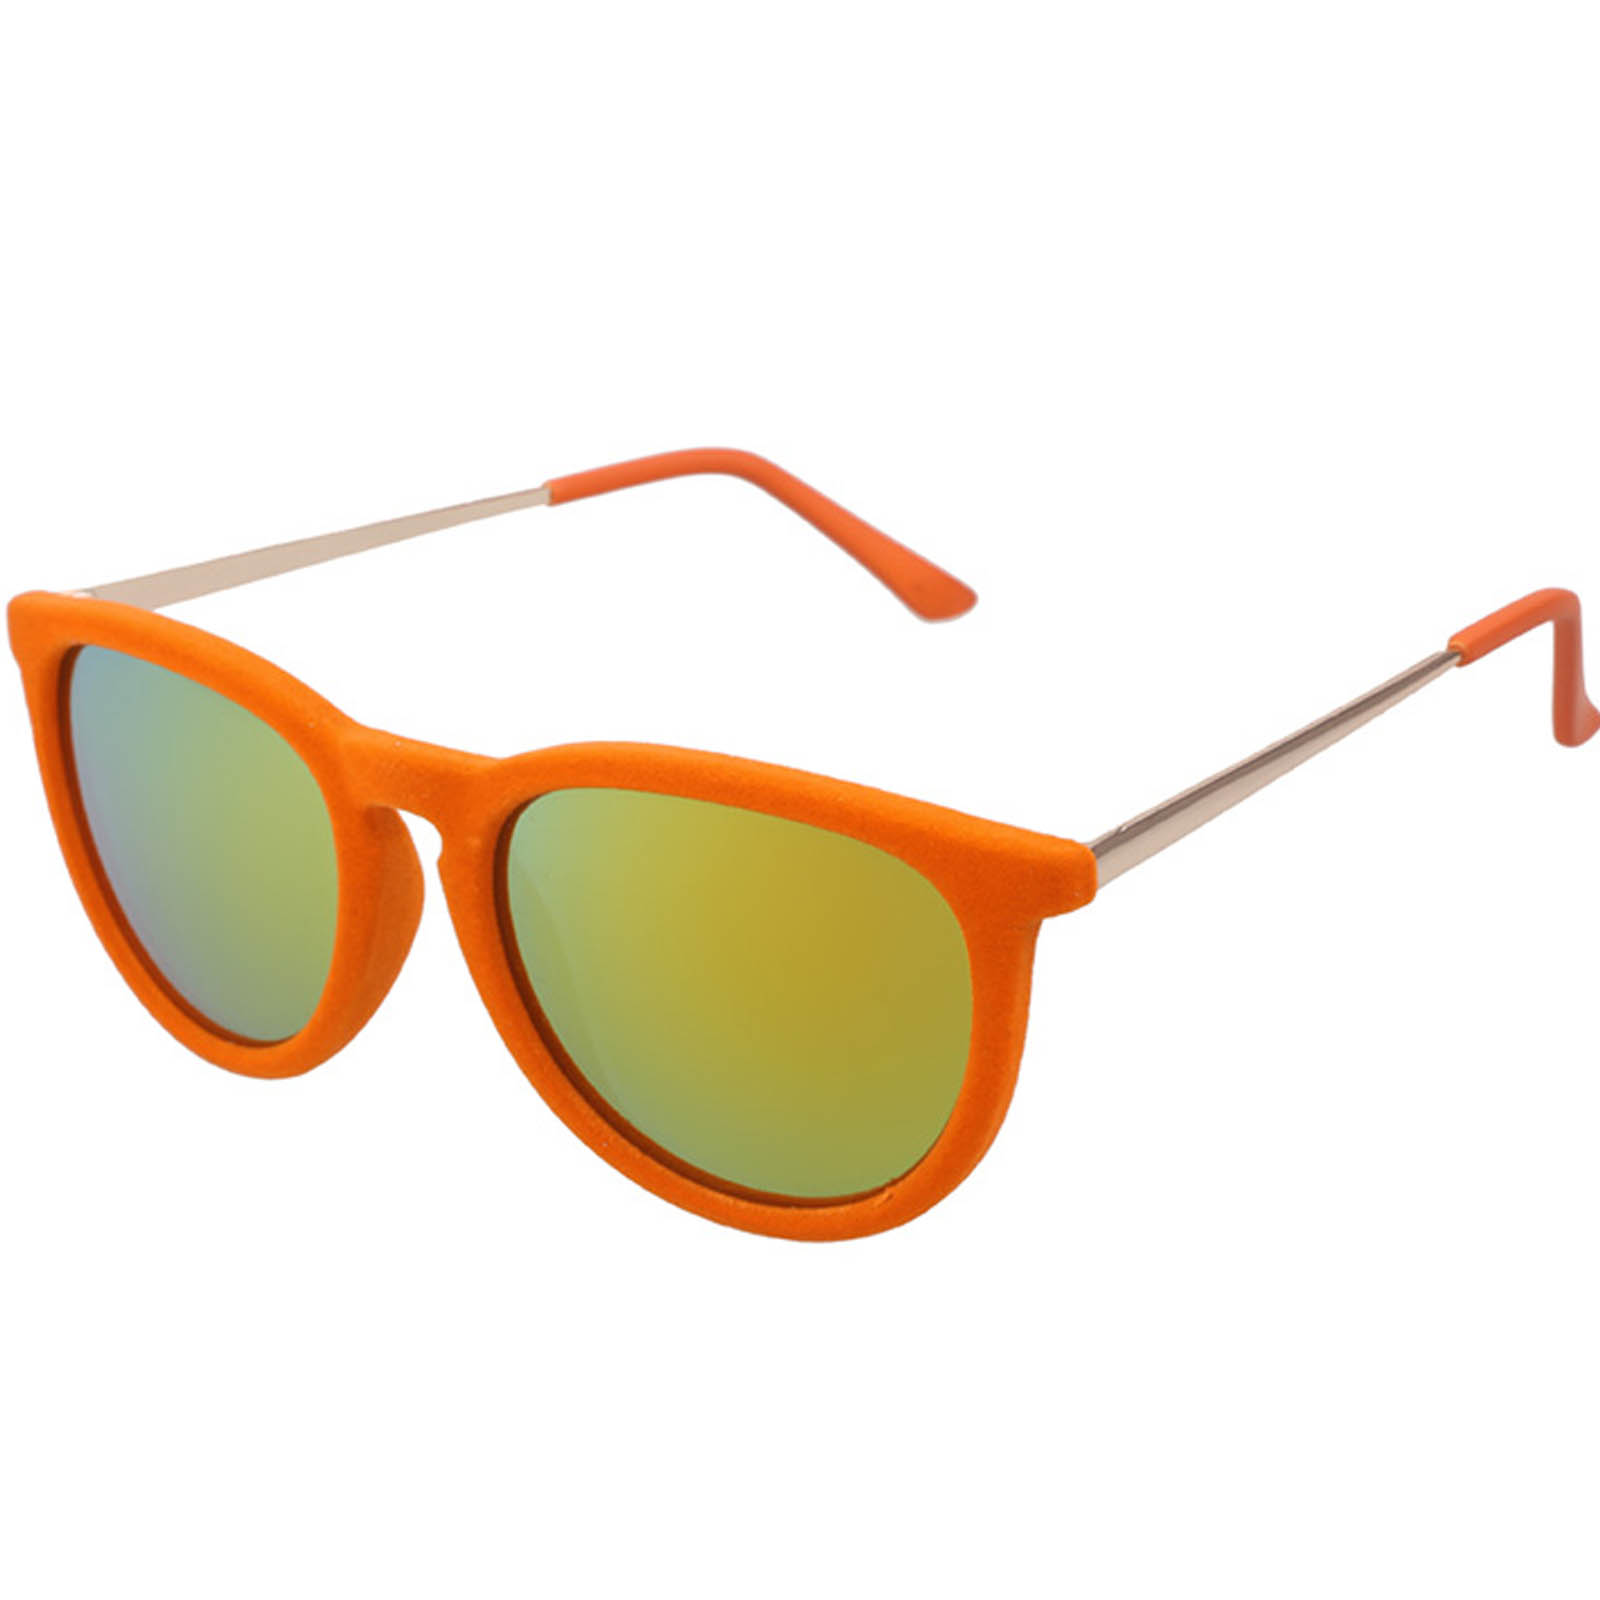 OWL ® 053 C5 Eyewear Sunglasses Women's Men's Plastic Velvet Orange ...